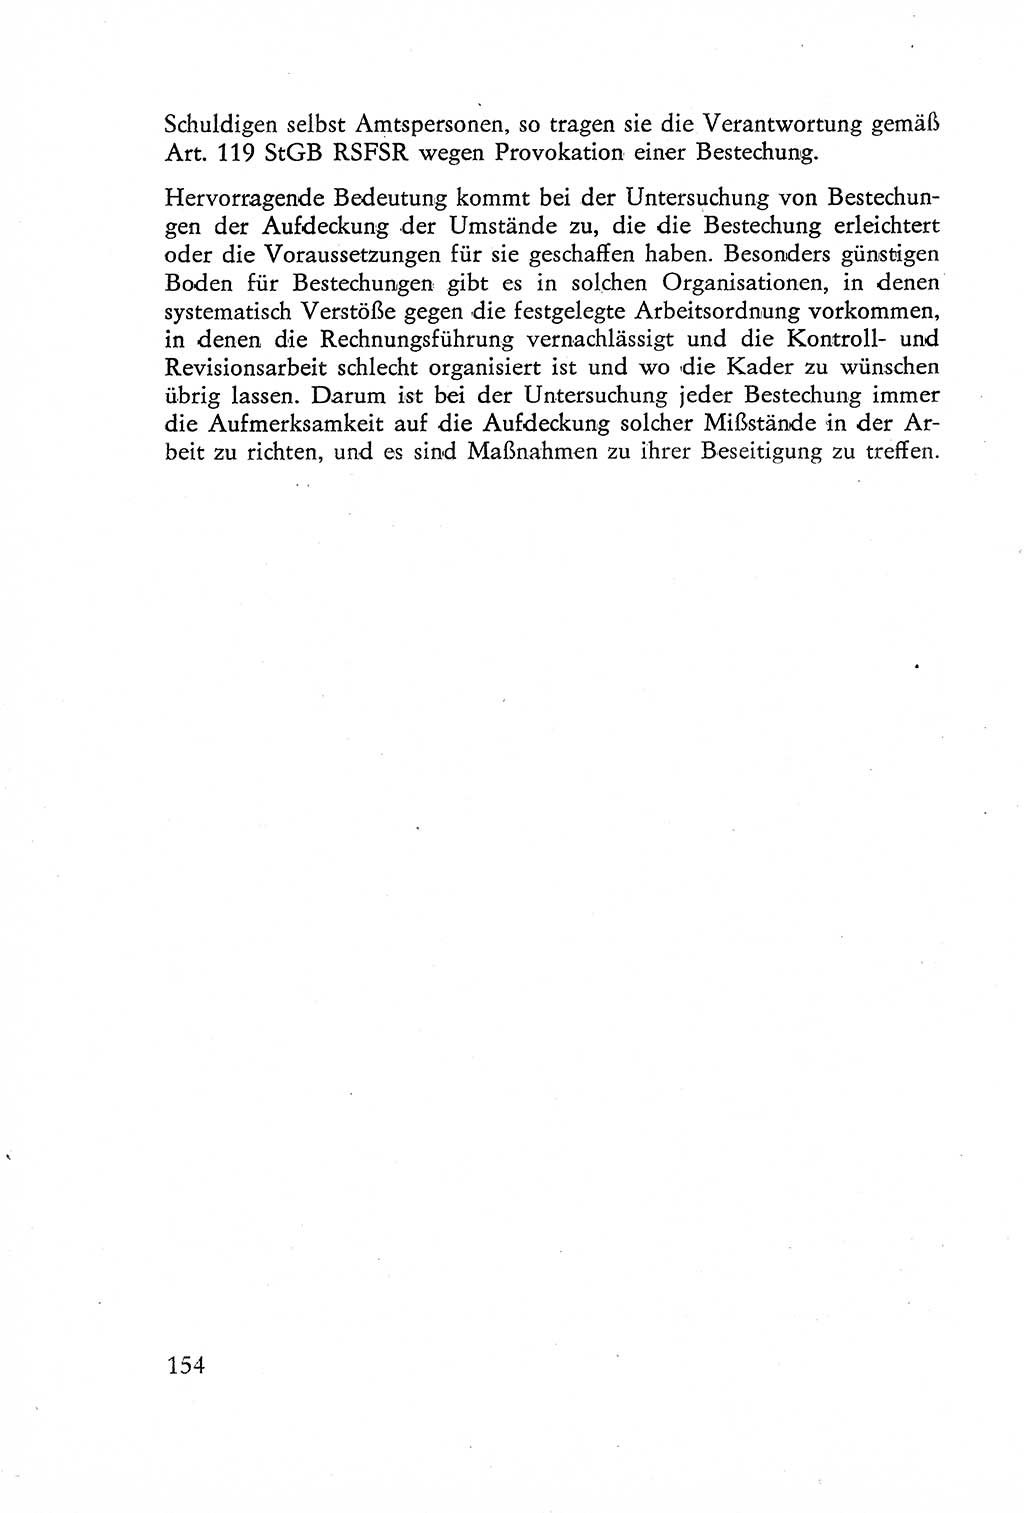 Die Untersuchung einzelner Verbrechensarten [Deutsche Demokratische Republik (DDR)] 1960, Seite 154 (Unters. Verbr.-Art. DDR 1960, S. 154)